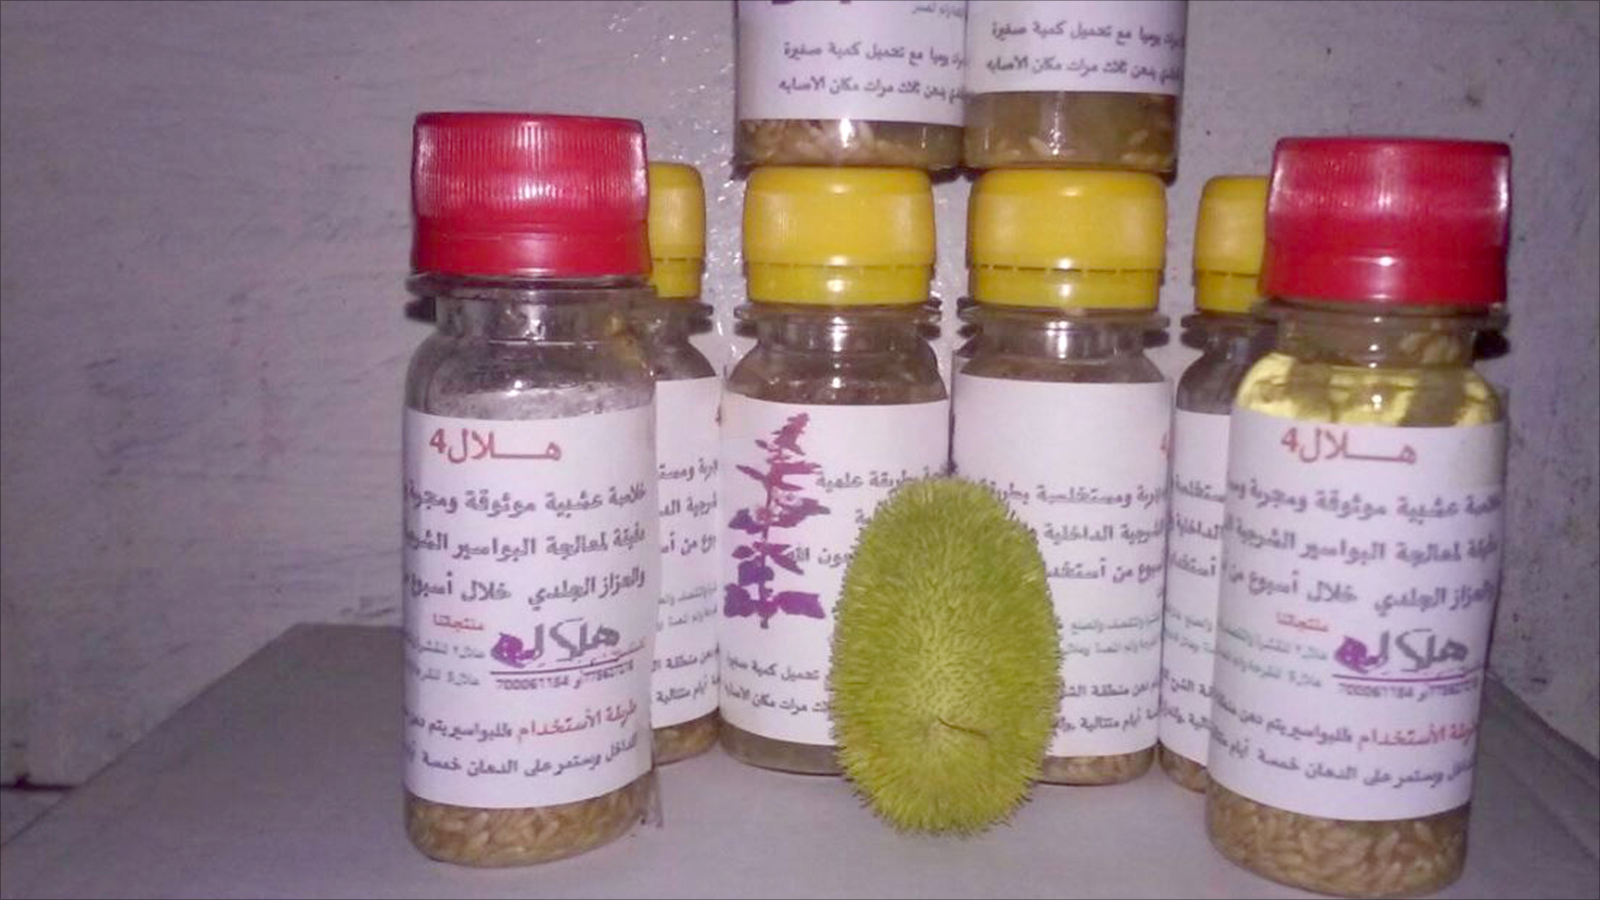 ‪بعض منتجات طب الأعشاب في اليمن‬ (مواقع التواصل)